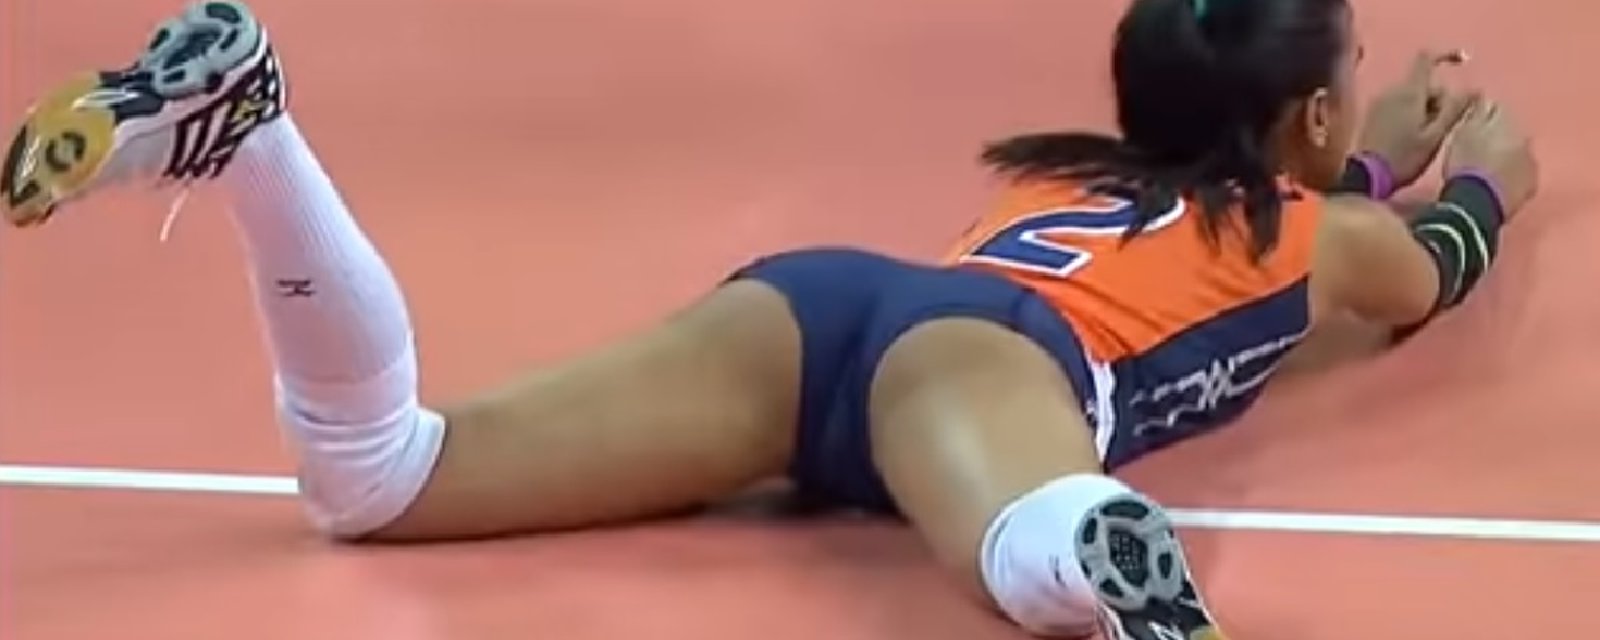 Découvrez la joueuse olympique de volleyball qui fait craquer l'internet!